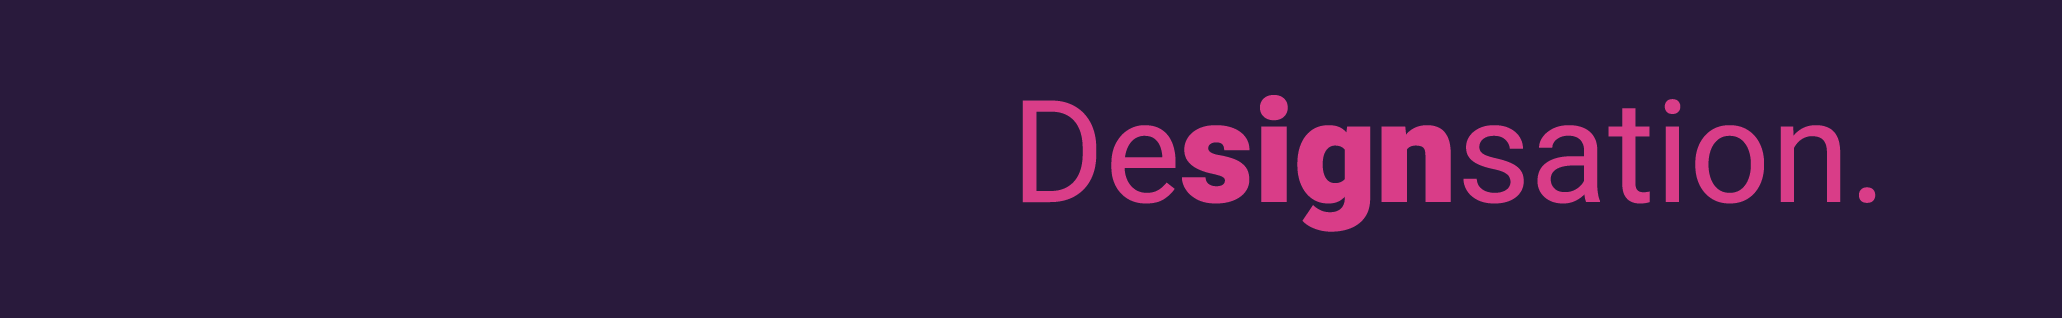 designsation info's profile banner